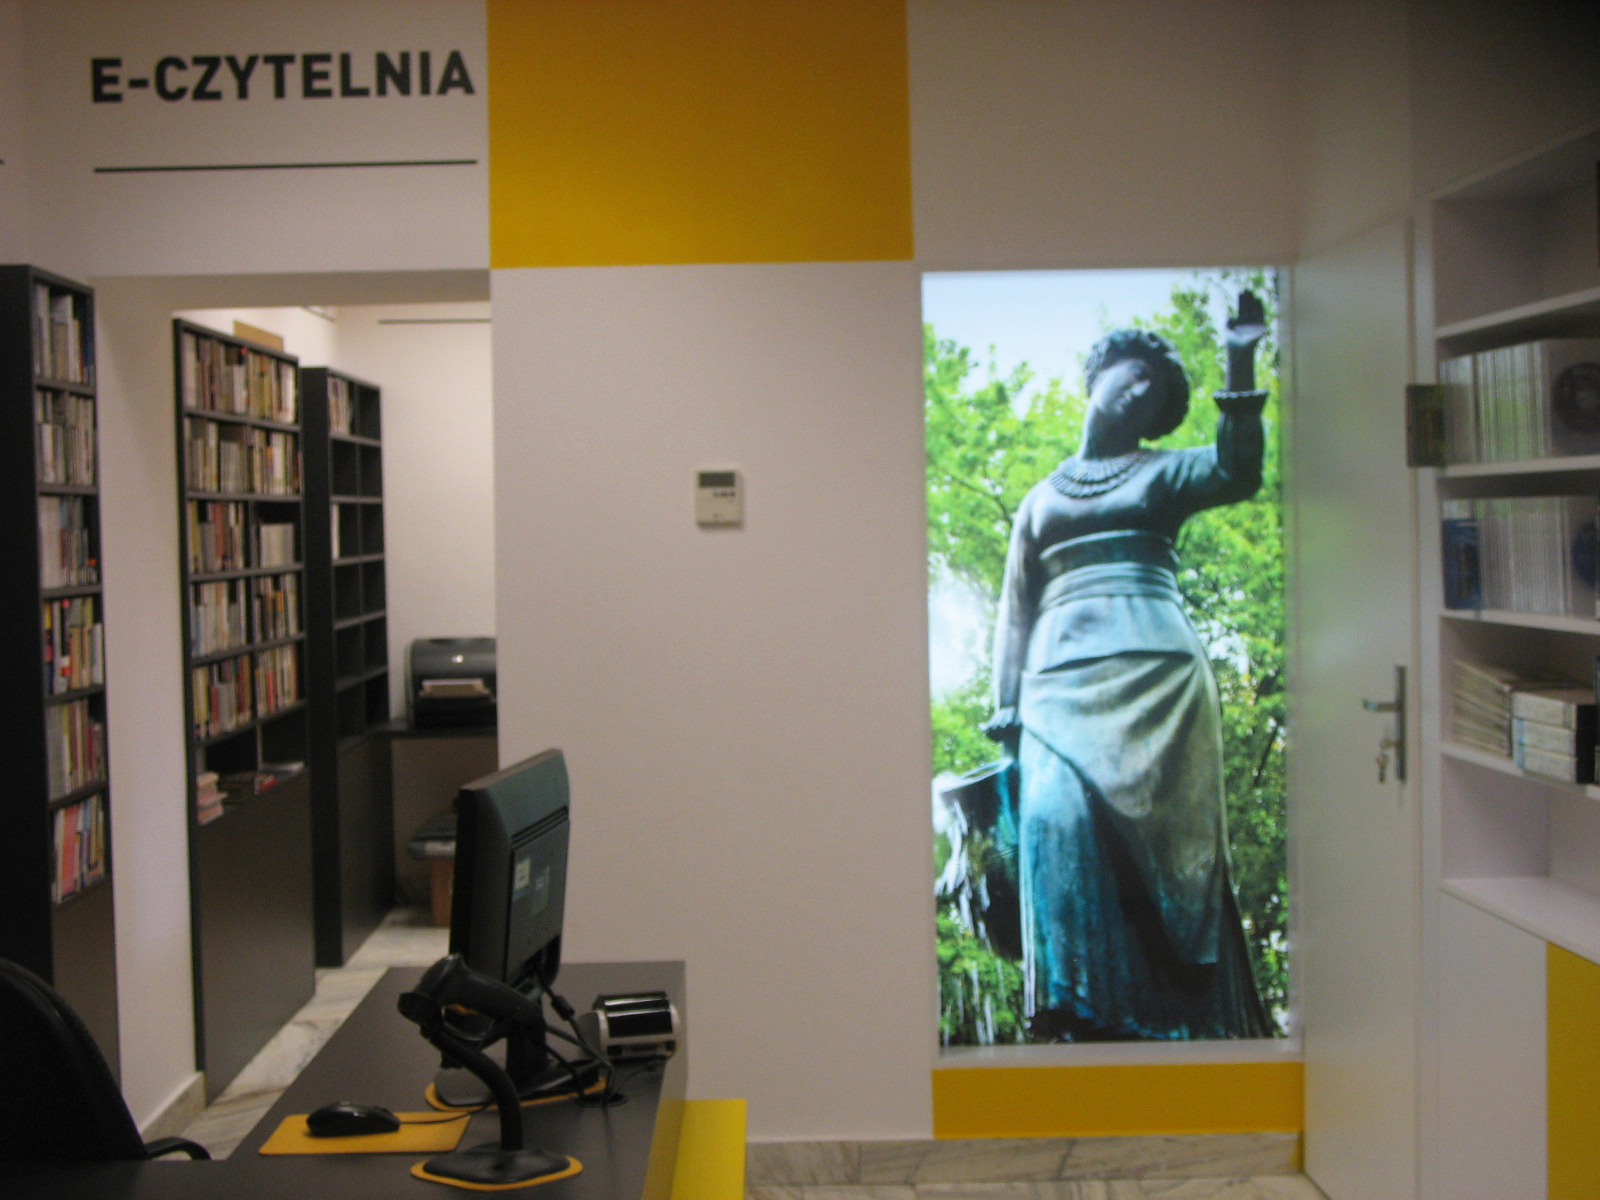 Czytelnia Naukowa nr 16 widok w środku na wejście do sali komputerowej oraz na duże zdjęcie pomnika "Dziewczyna z Dzbanem" (żoliborska Alina)